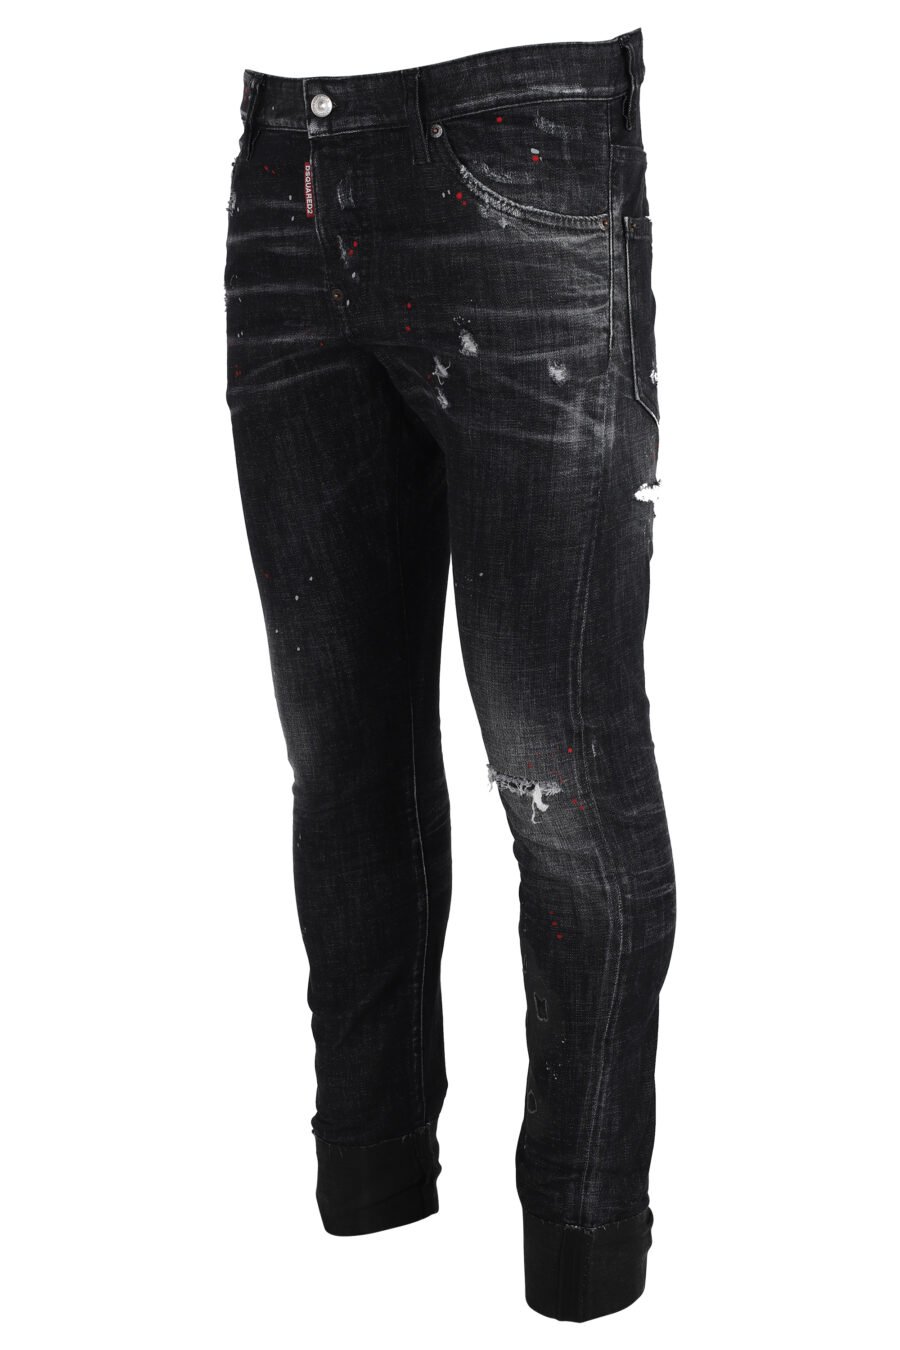 Pantalón vaquero "sexy twist jean" negro desgastado - IMG 4853